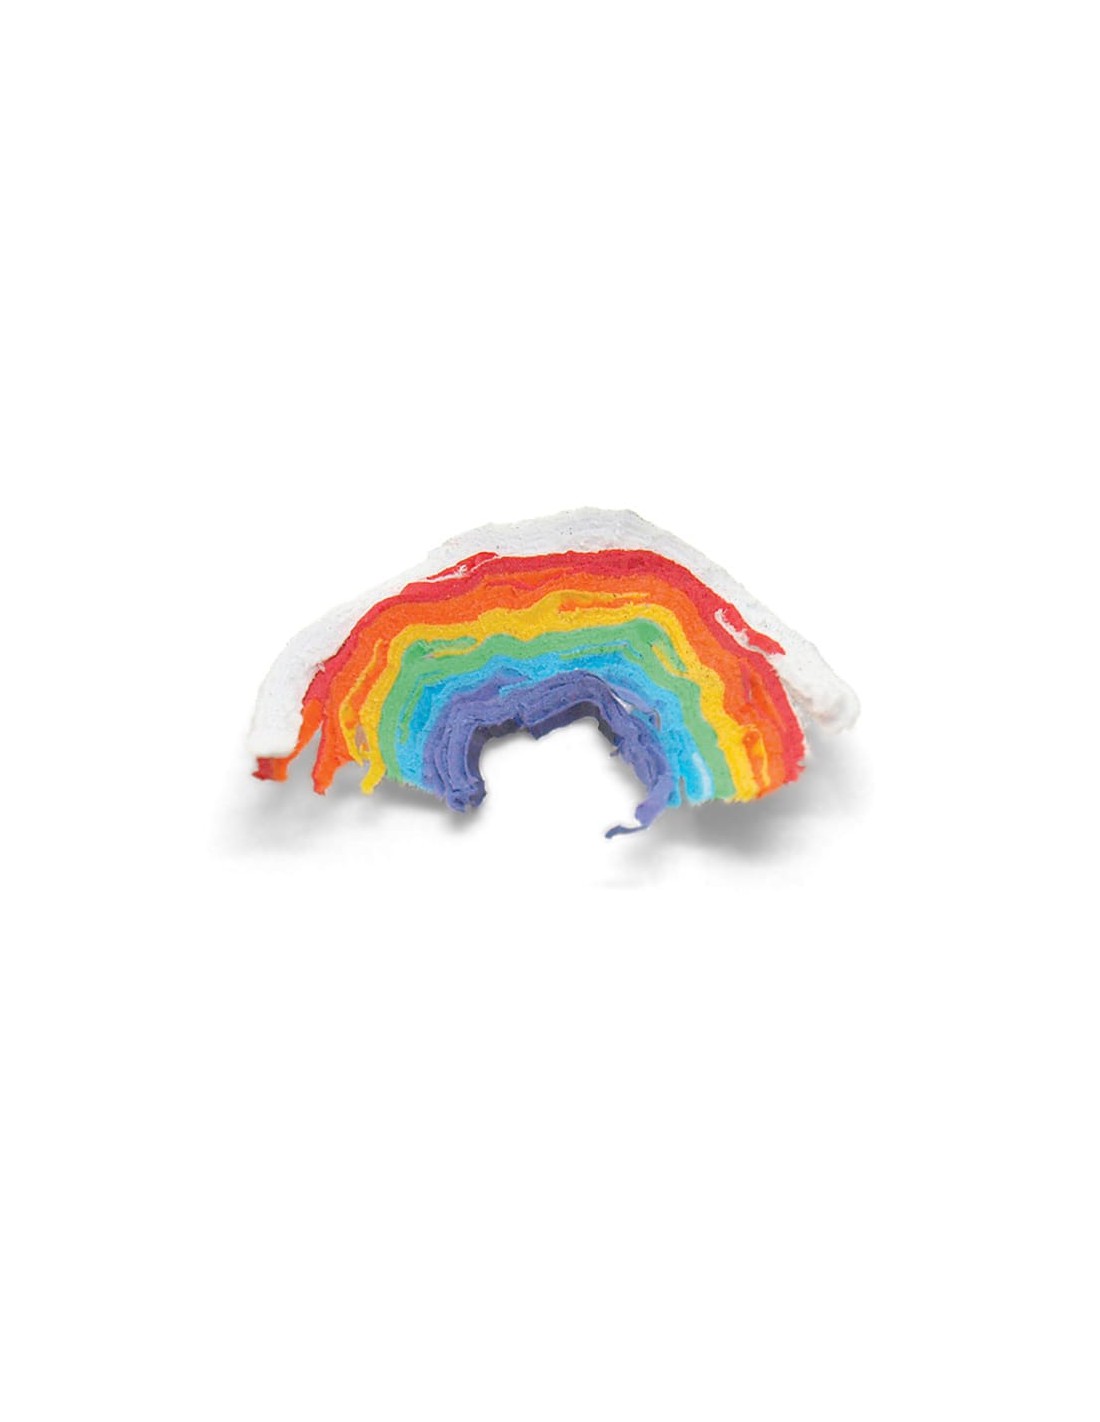 Matite arcobaleno per bambini - Matite colorate a forma di arcobaleno 30  pezzi di matite magiche per disegno e schizzo, matite a 4 colori arcobaleno,  matite magiche per colorare, sicure e durevoli 